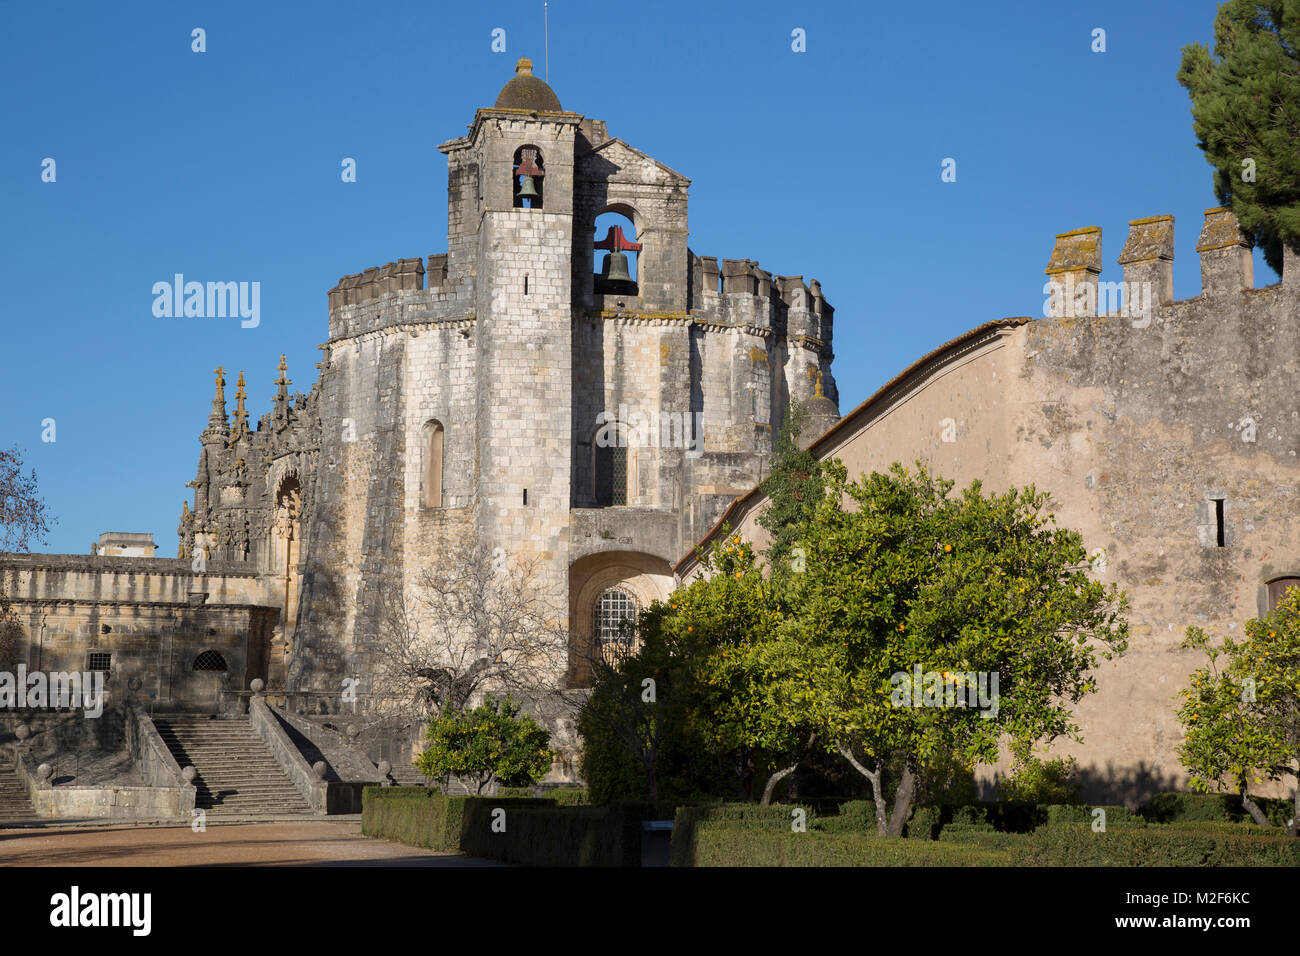 Convento de Cristo; Tomar; Portugal Stock Photo